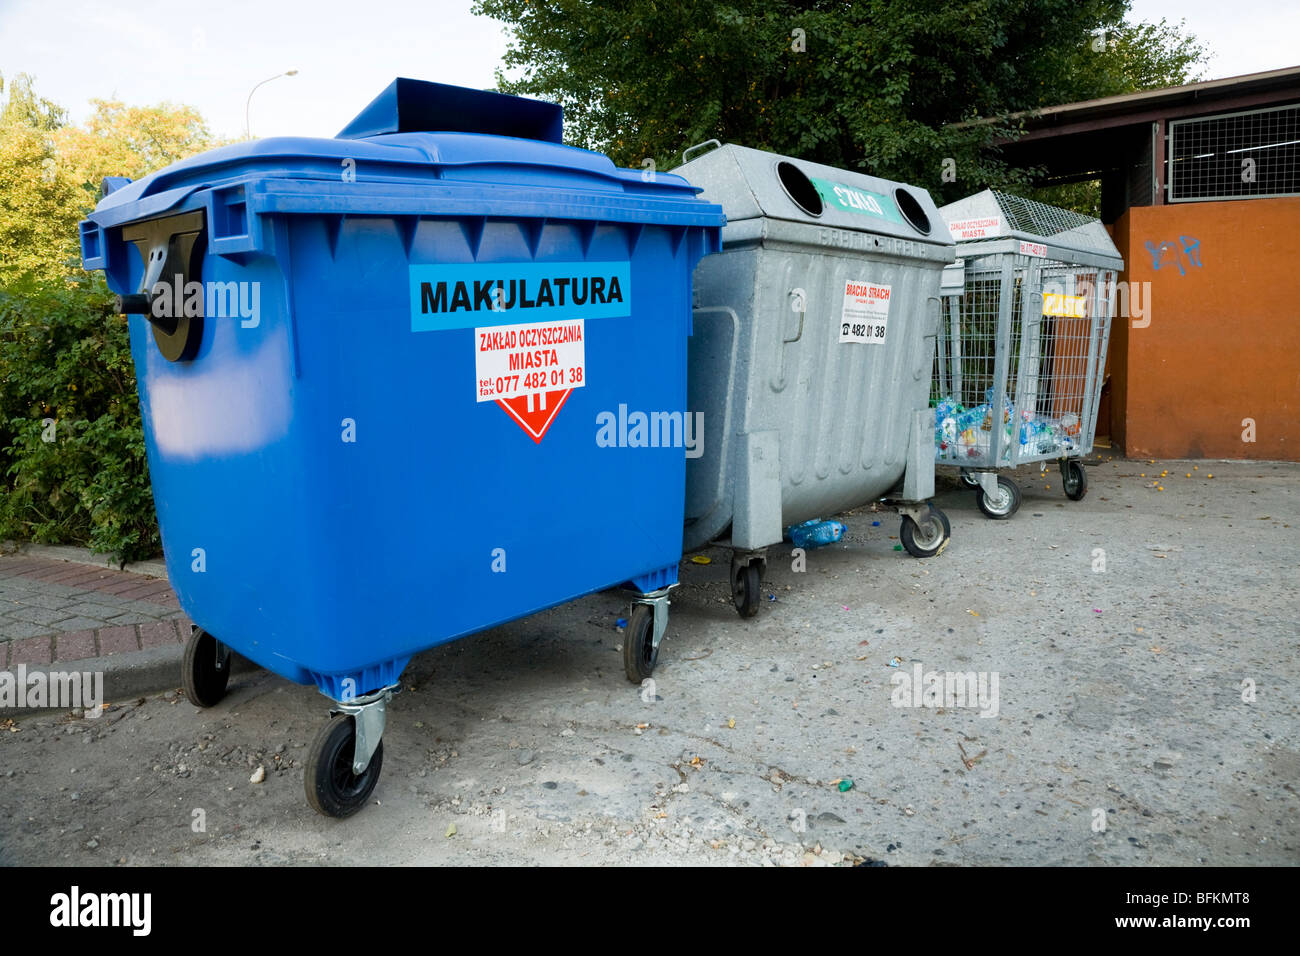 Point de collecte de recyclage pour le papier recyclé, les bouteilles en plastique / bottle bank dans un parking. La Pologne. Banque D'Images